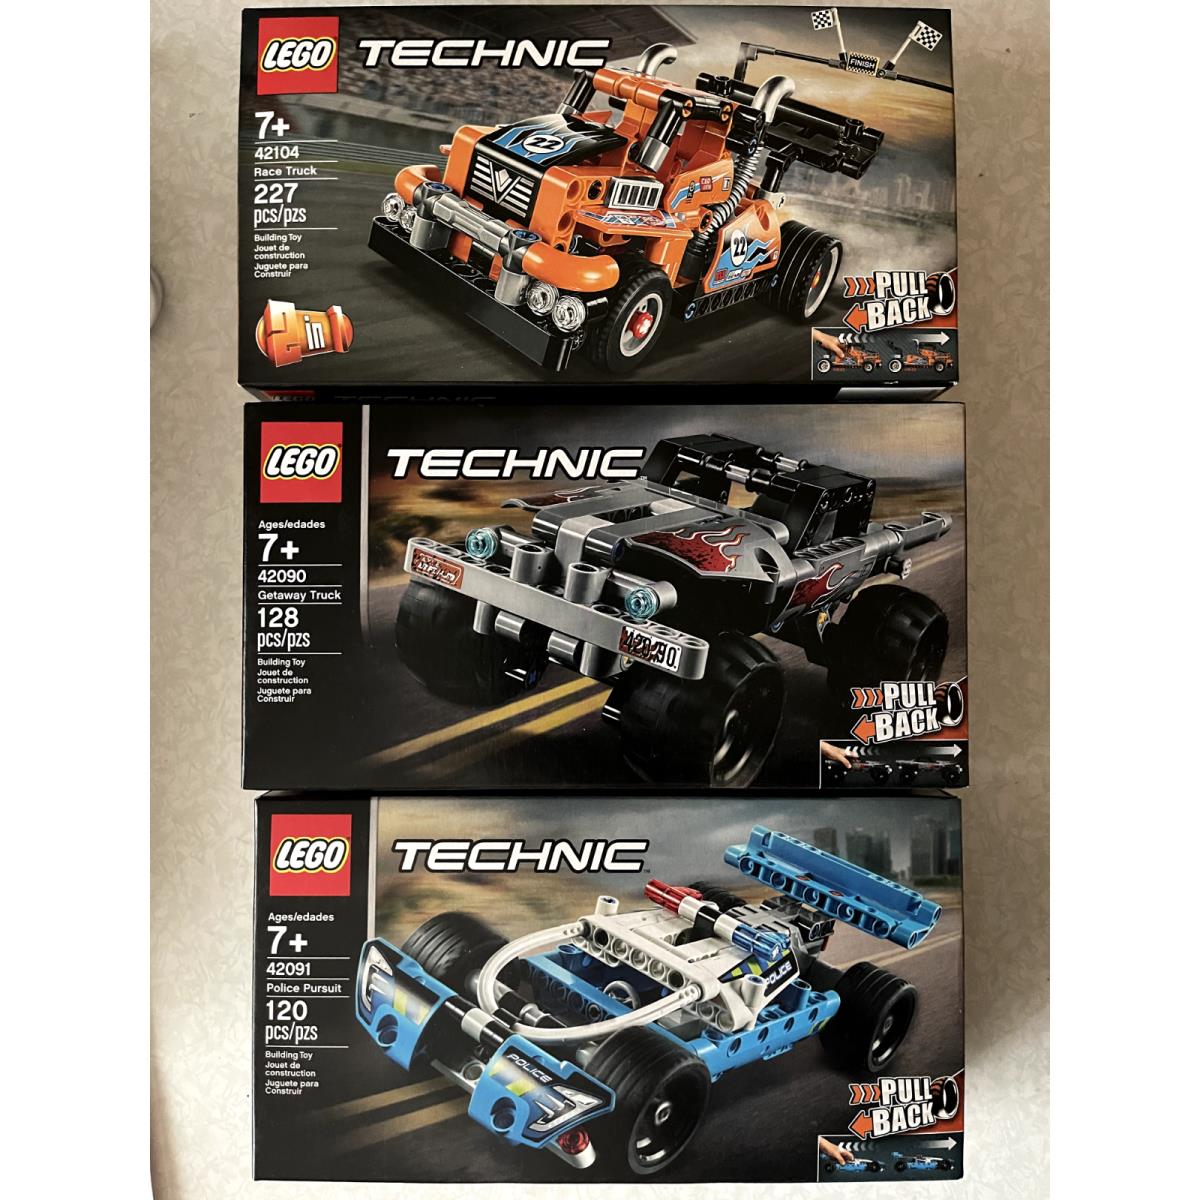 Lego Technic 3 Sets 42090 Gateway Truck 42104 Race 42091 Police Pursuit Nisb